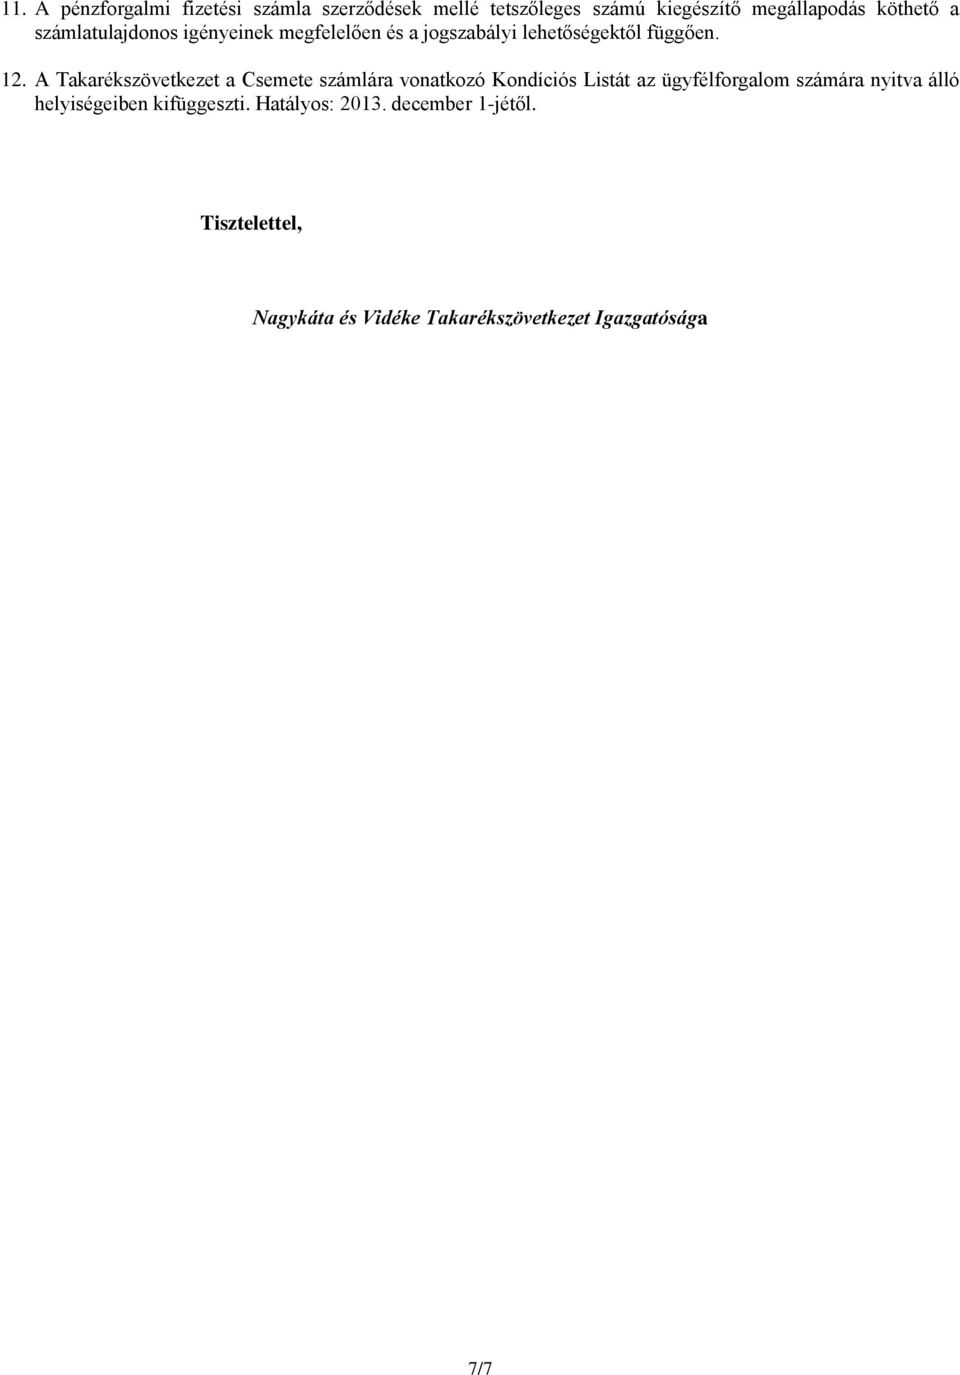 A Takarékszövetkezet a Csemete számlára vonatkozó Kondíciós Listát az ügyfélforgalom számára nyitva álló